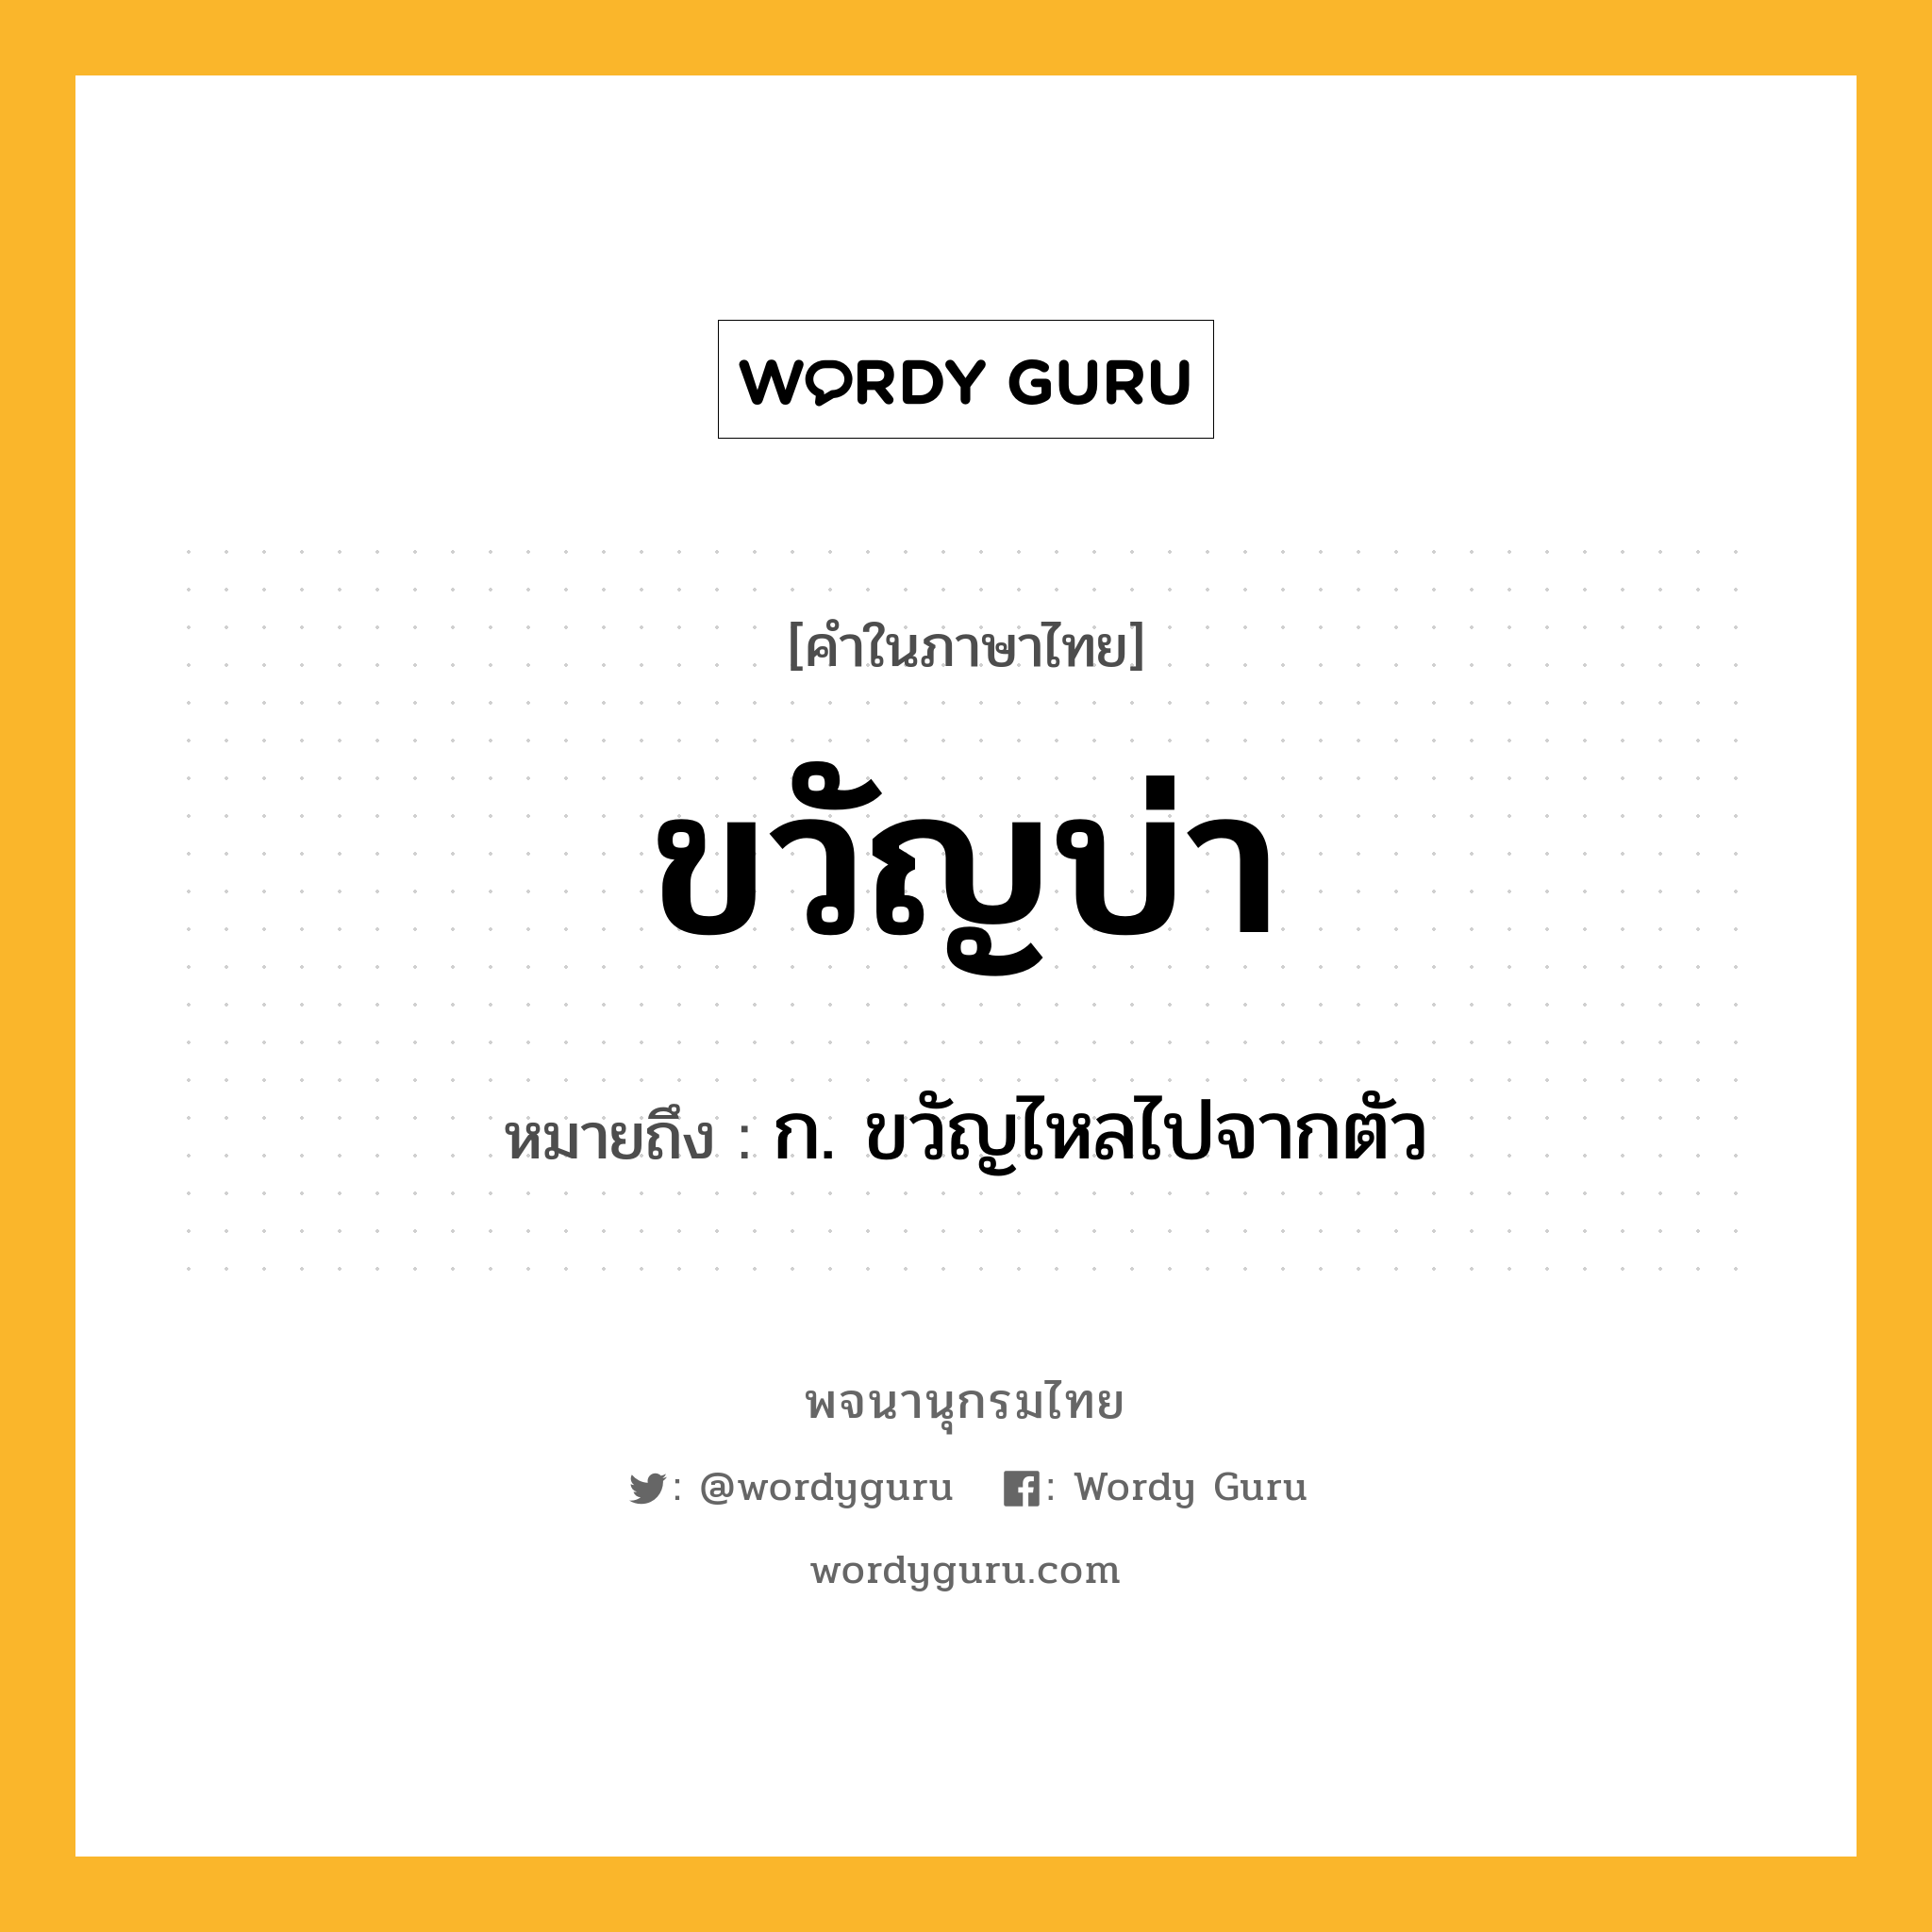 ขวัญบ่า ความหมาย หมายถึงอะไร?, คำในภาษาไทย ขวัญบ่า หมายถึง ก. ขวัญไหลไปจากตัว